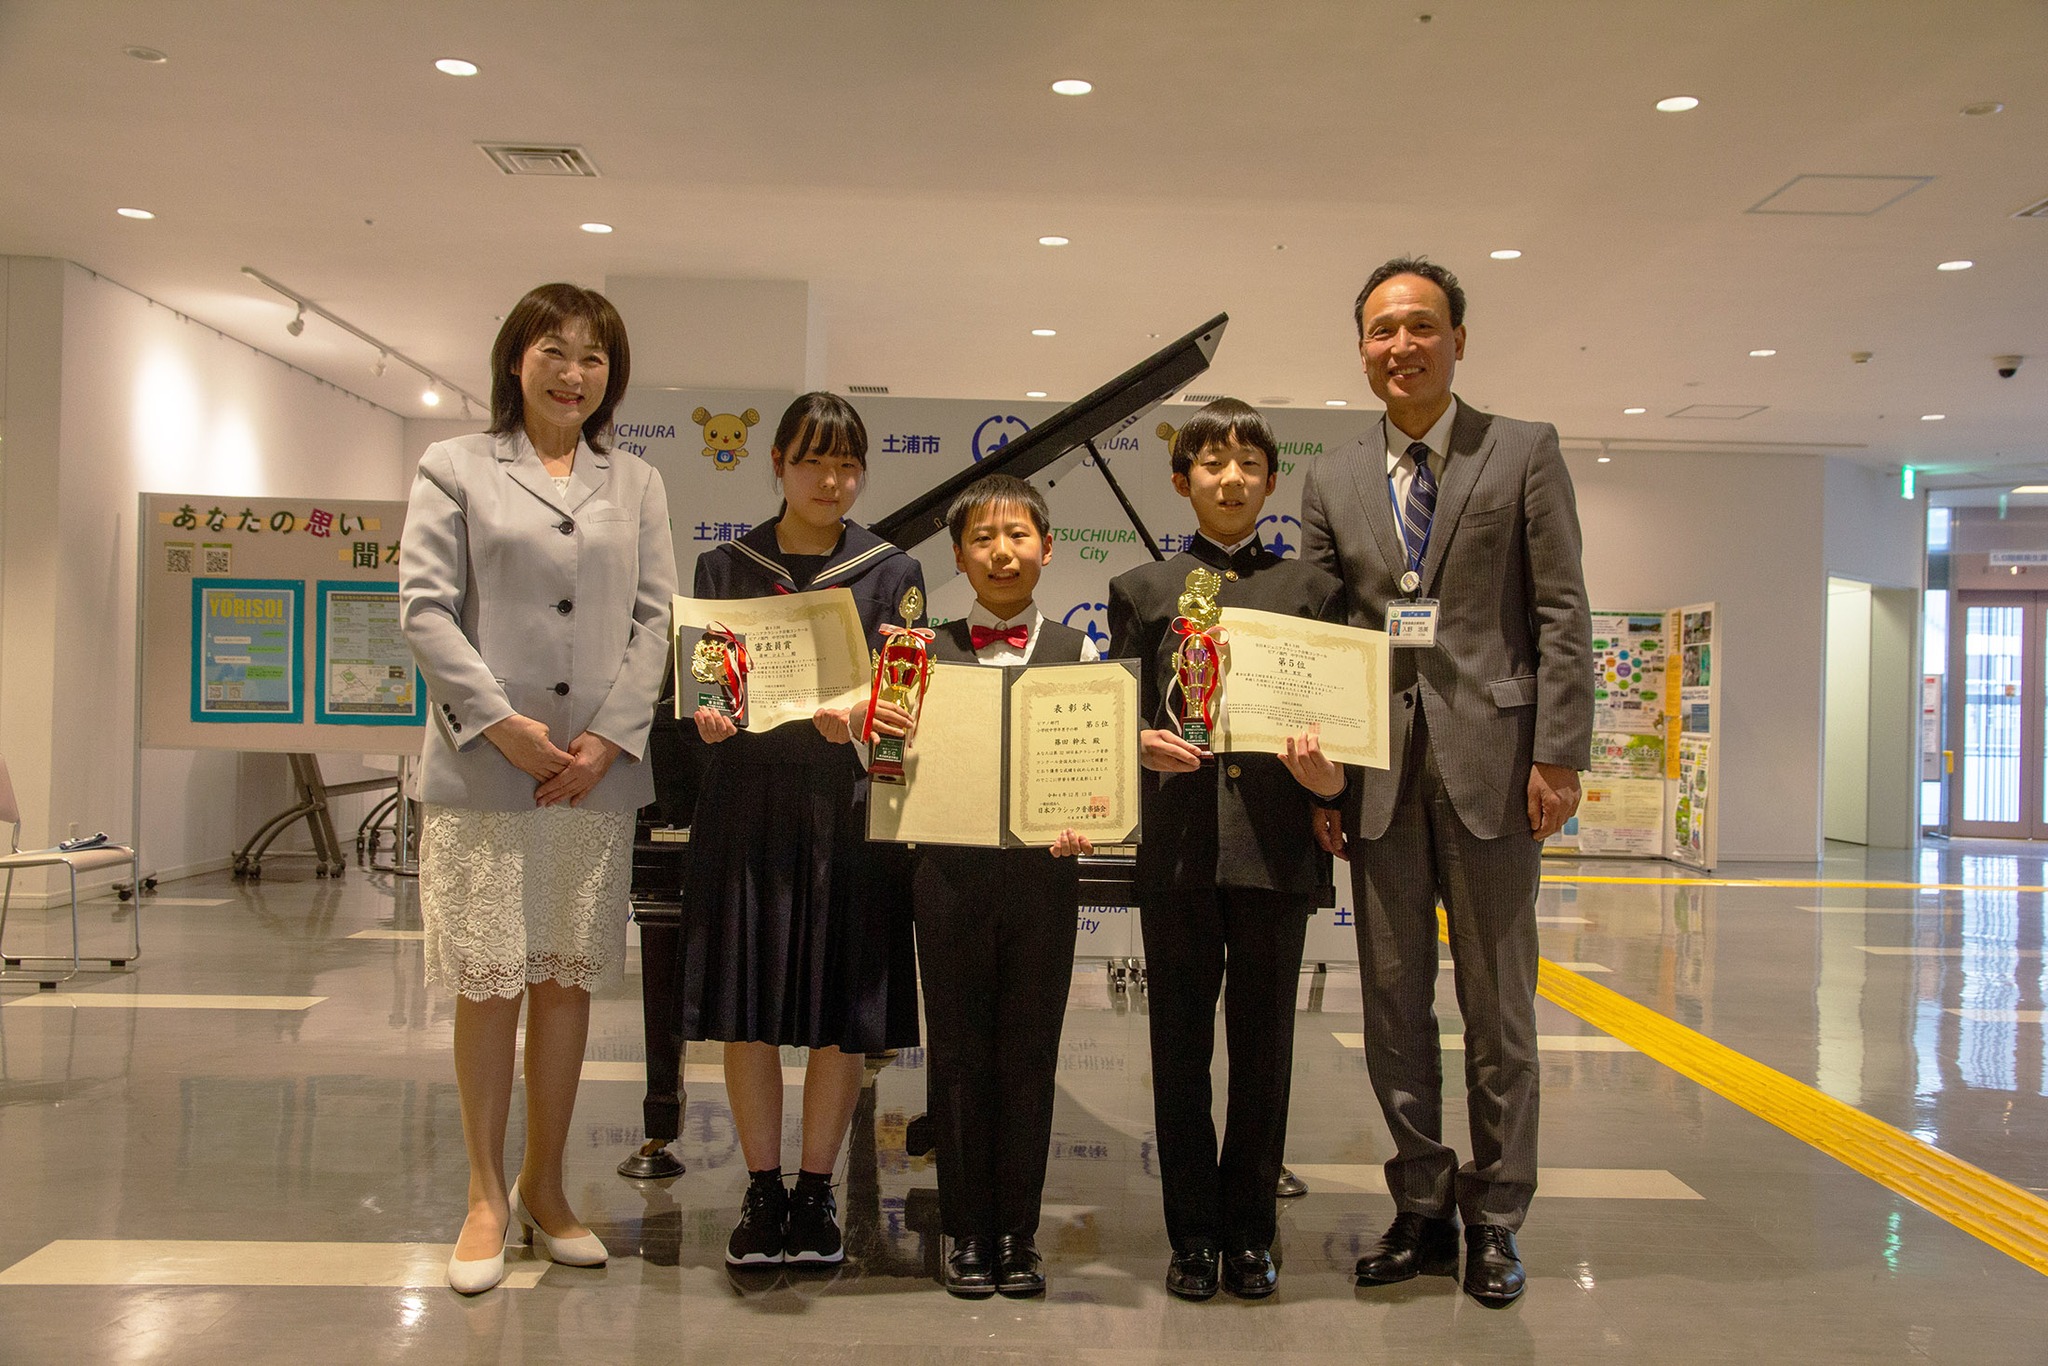 土浦の小中学生が音楽コンクールで入賞しました!page-visual 土浦の小中学生が音楽コンクールで入賞しました!ビジュアル